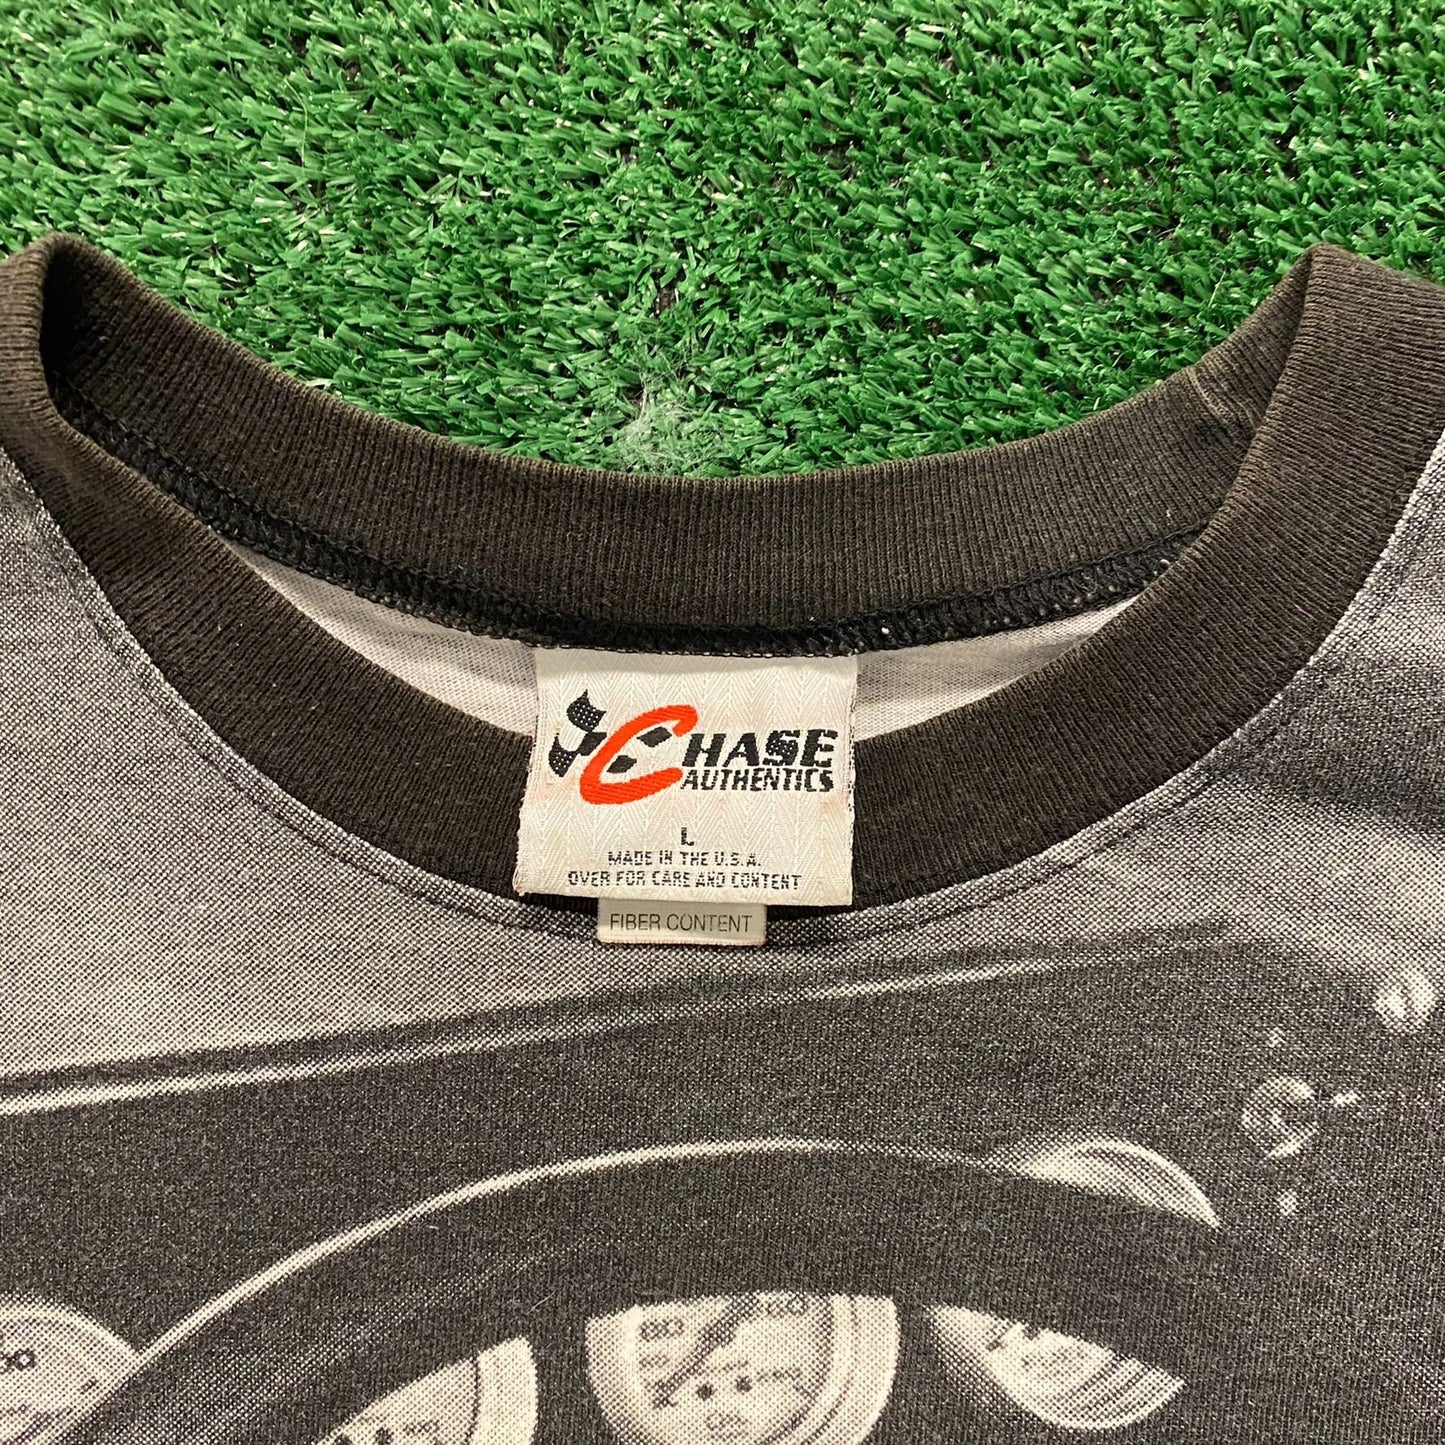 Dale Earnhardt Vintage 90s NASCAR AOP T-Shirt